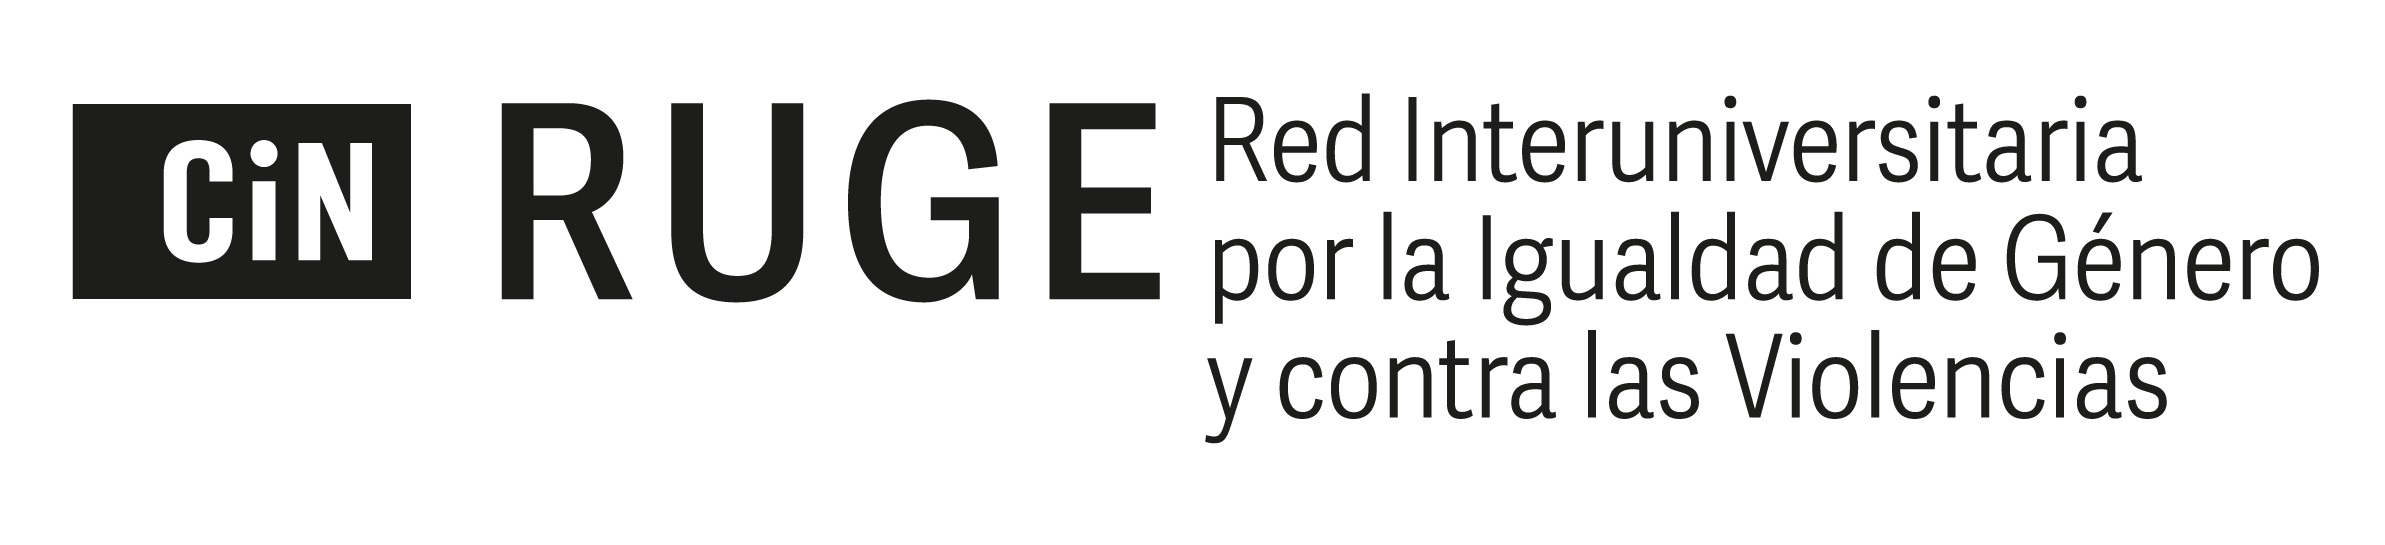 Logo RUGE